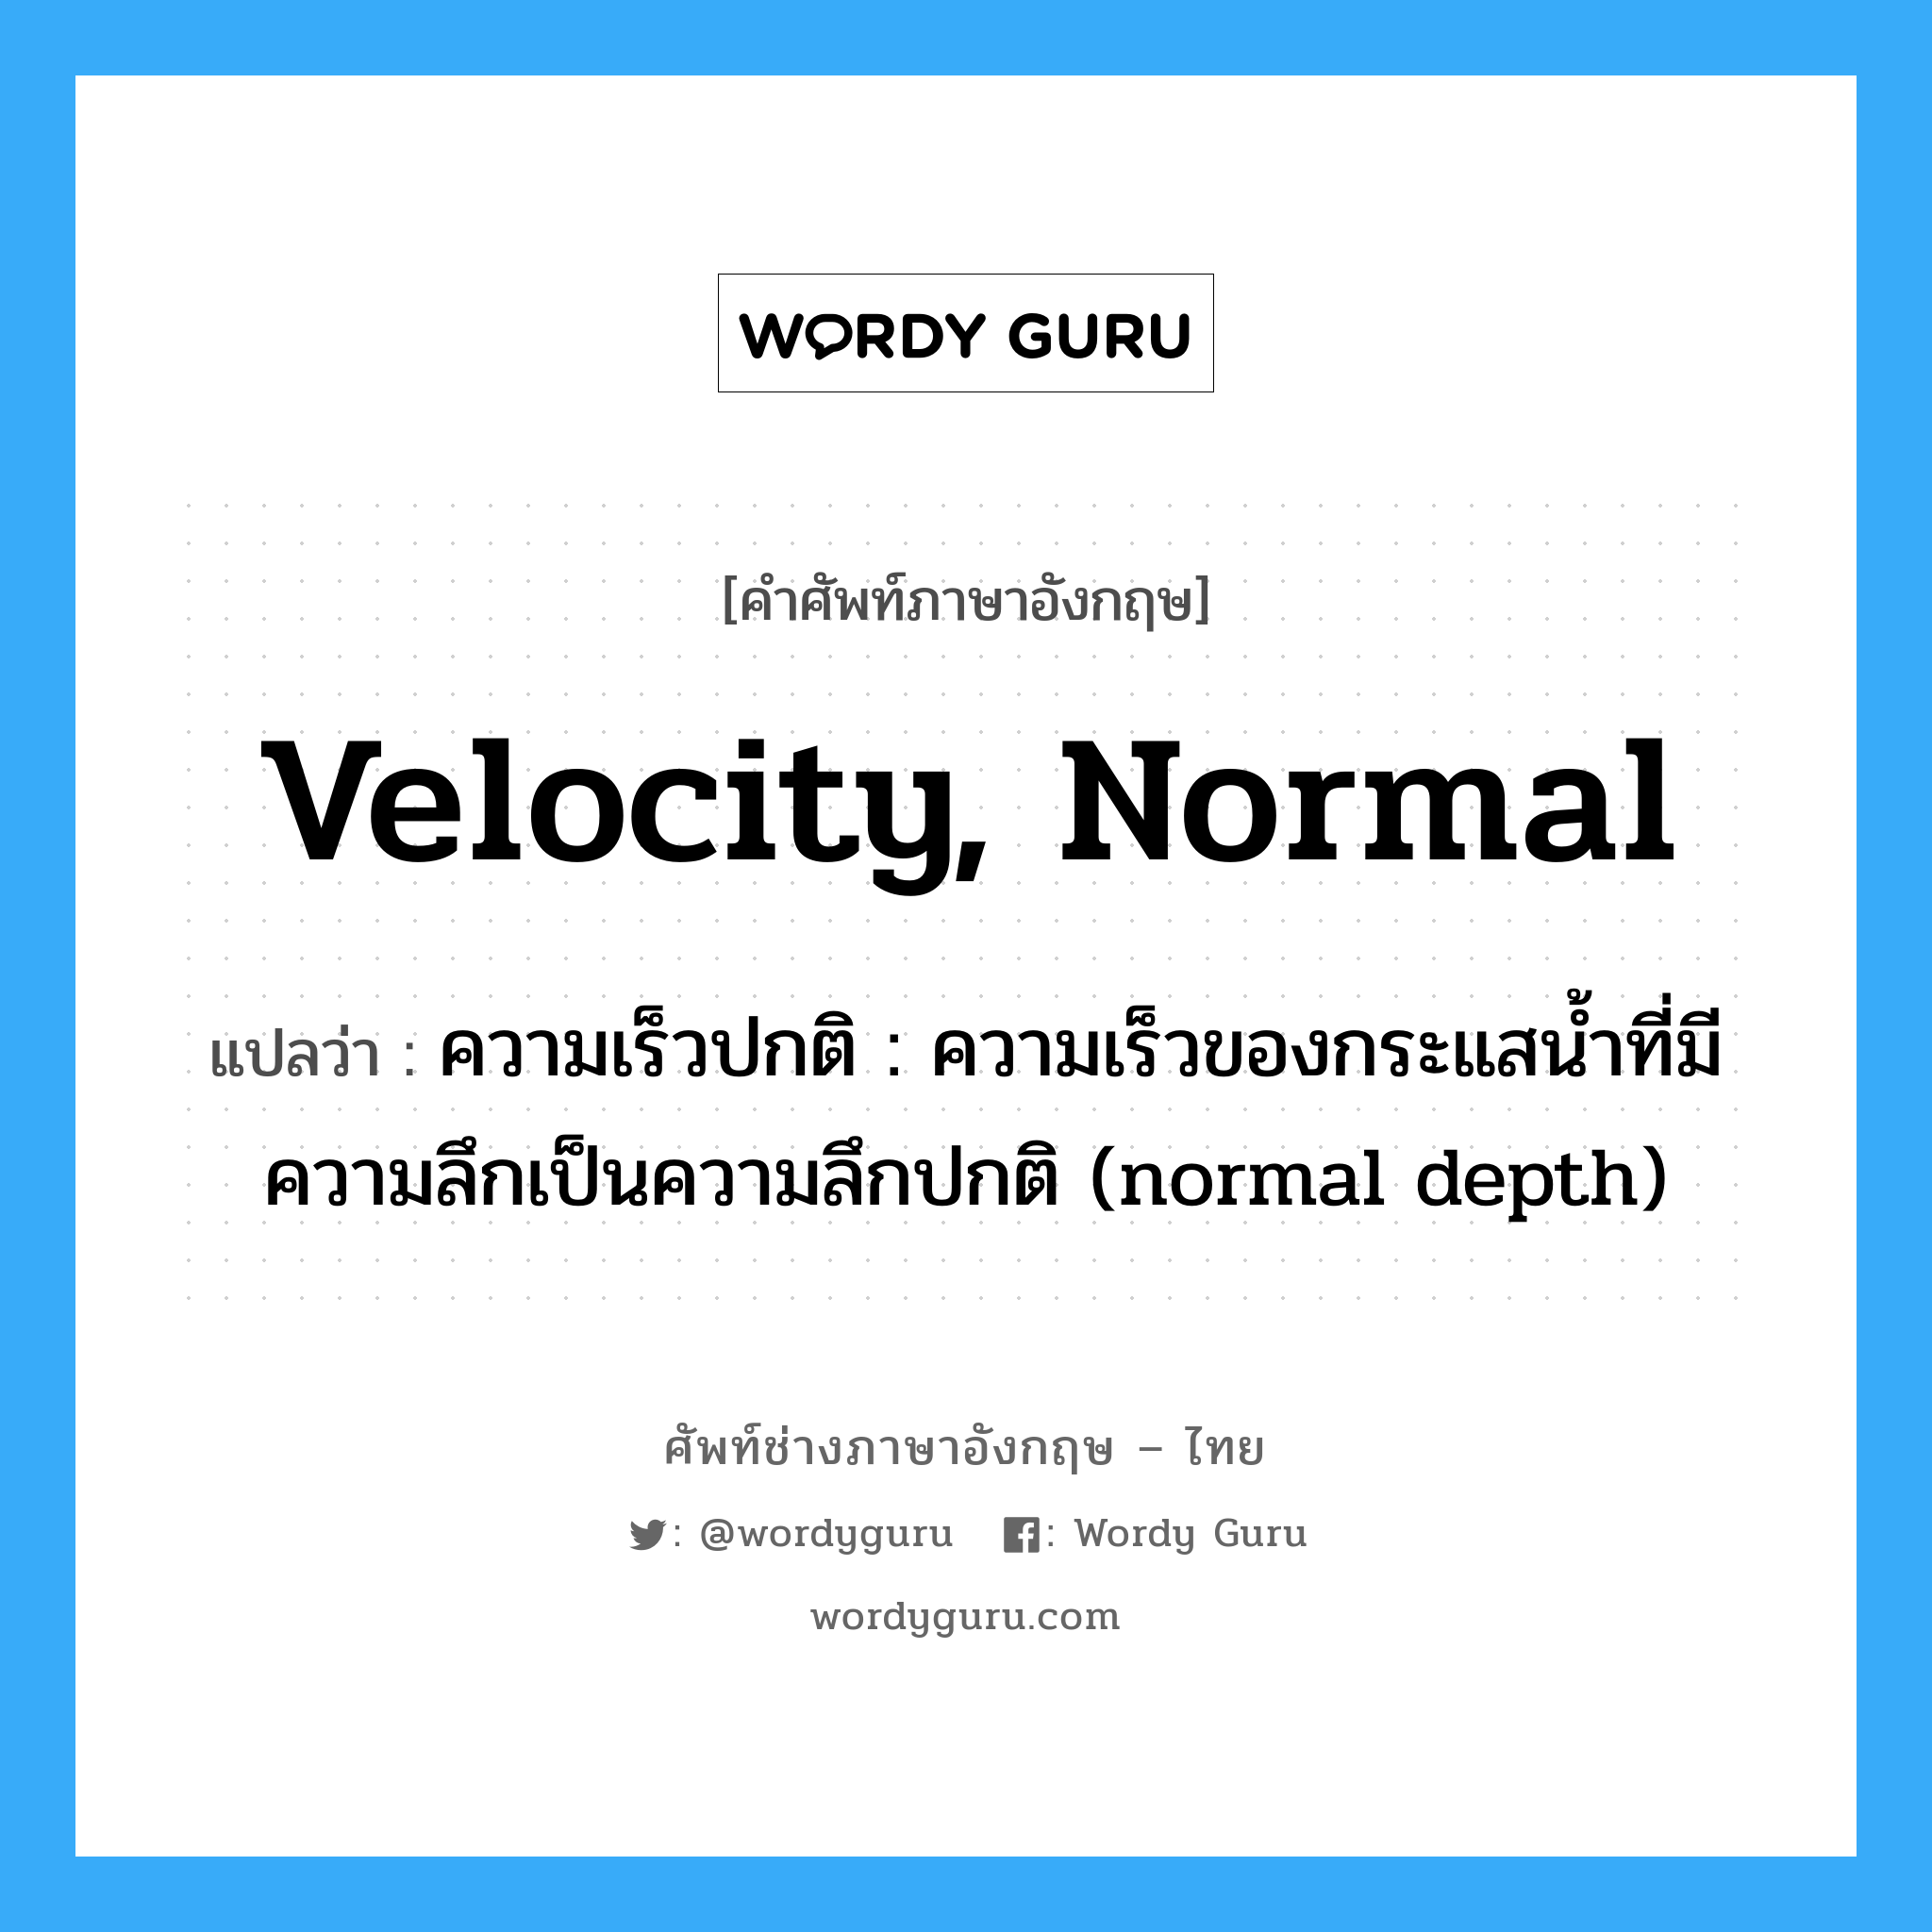 velocity, normal แปลว่า?, คำศัพท์ช่างภาษาอังกฤษ - ไทย velocity, normal คำศัพท์ภาษาอังกฤษ velocity, normal แปลว่า ความเร็วปกติ : ความเร็วของกระแสน้ำที่มีความลึกเป็นความลึกปกติ (normal depth)